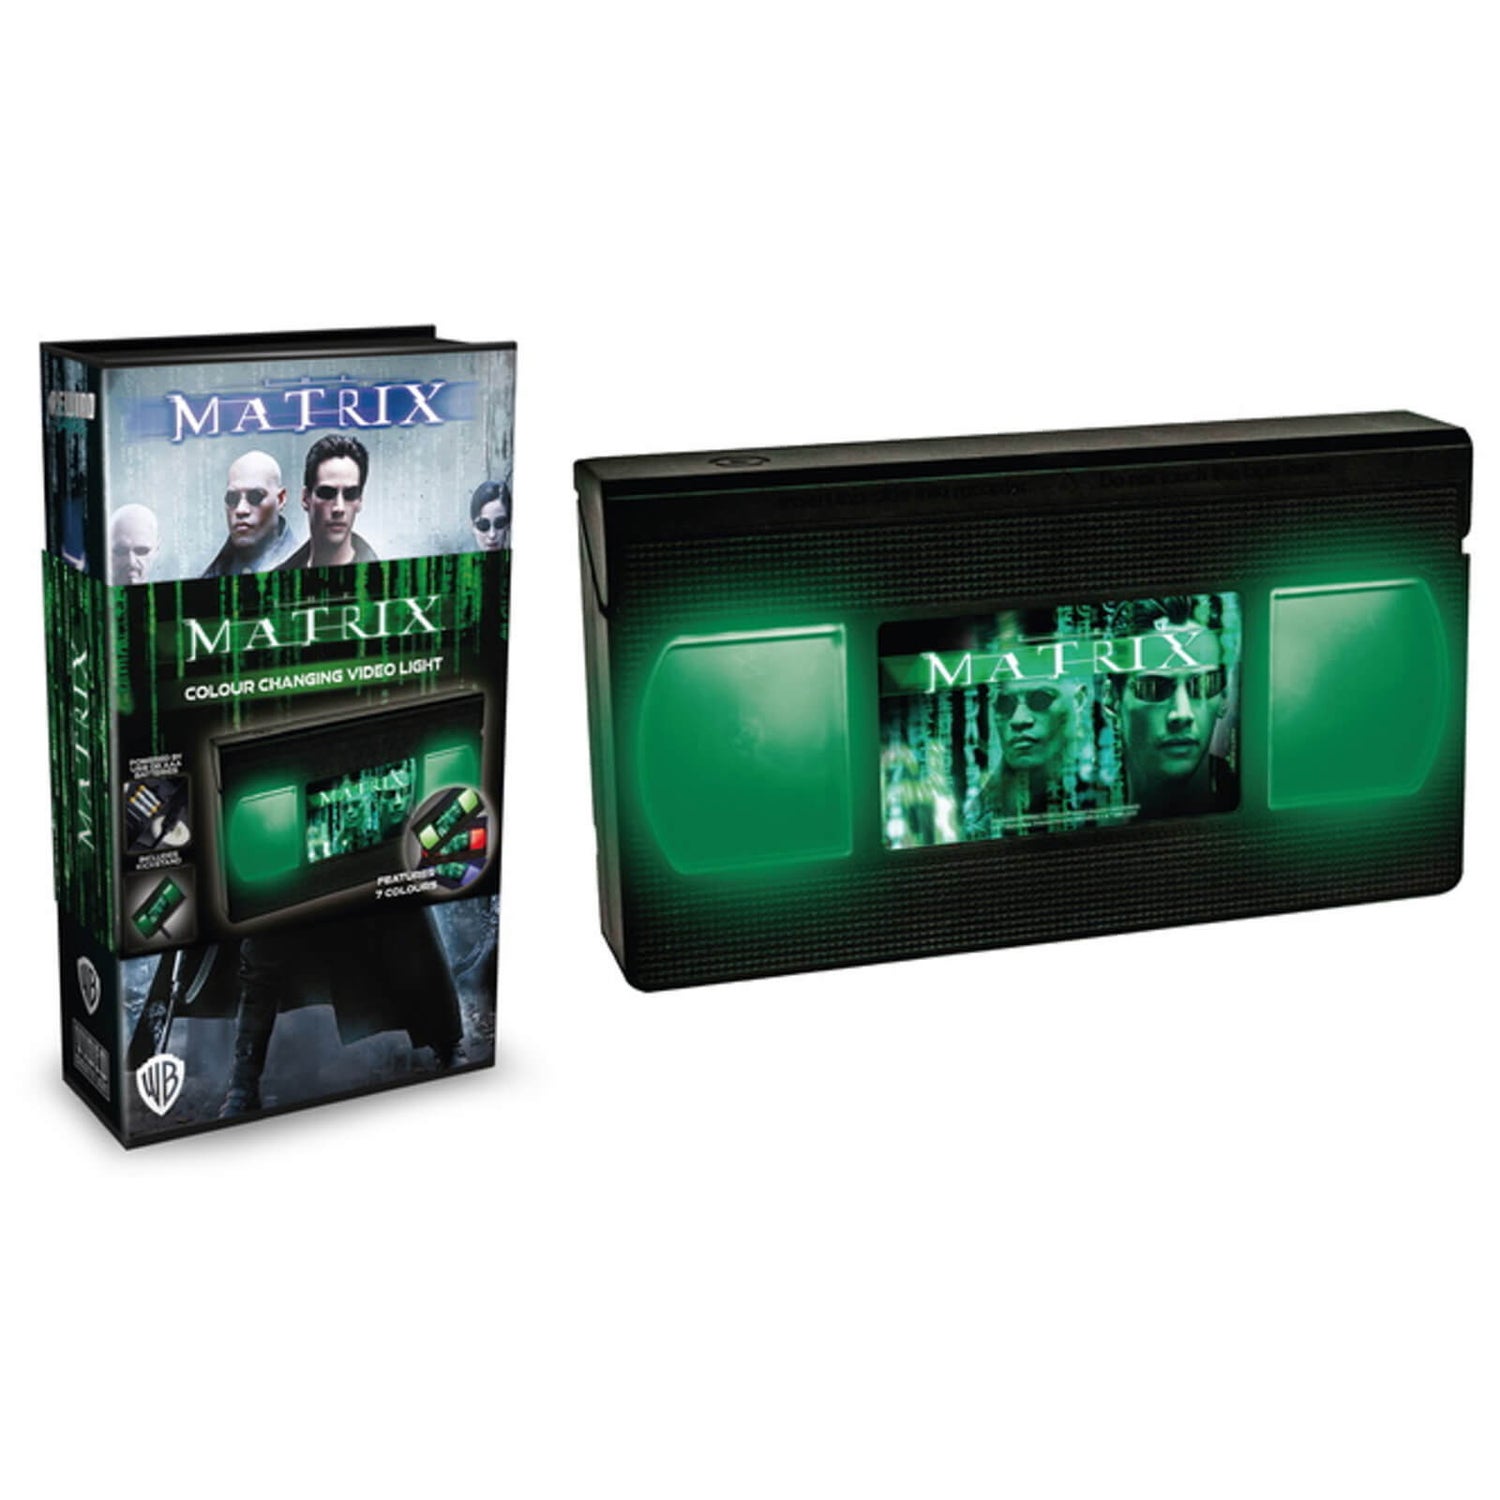 Rewind Lights: The Matrix VHS Light